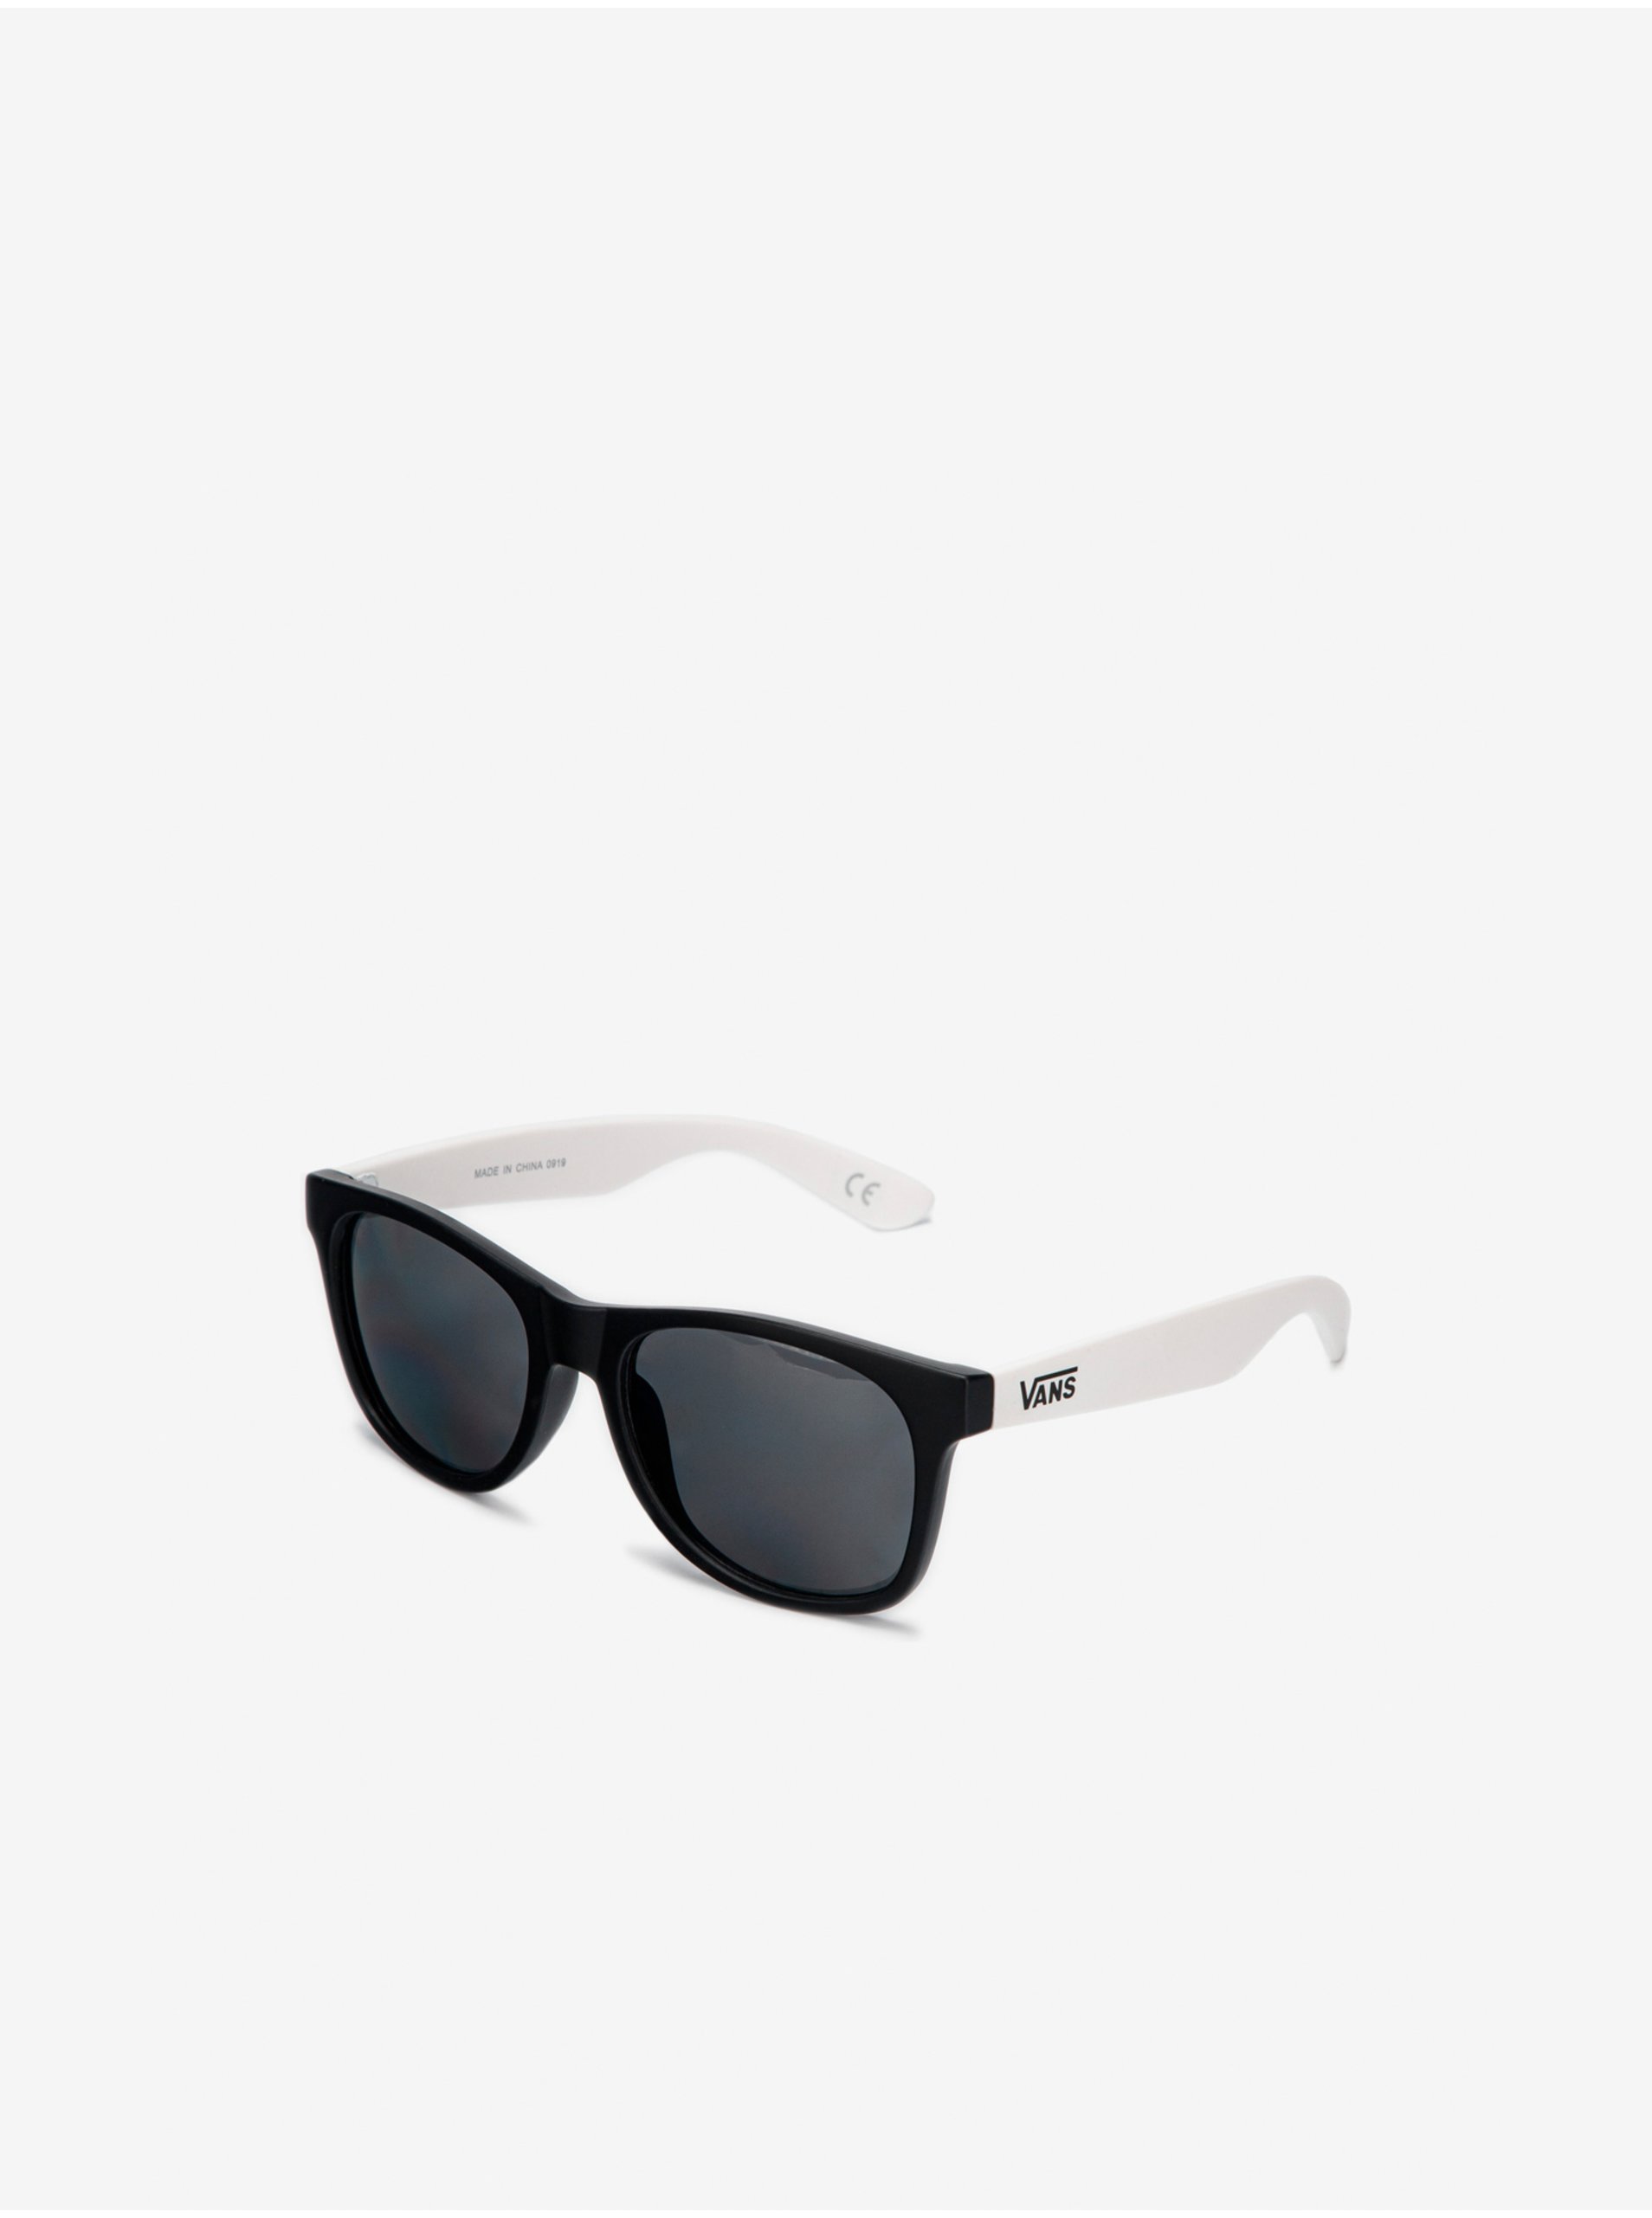 E-shop Bílo-černé pánské sluneční brýle VANS Spicoli 4